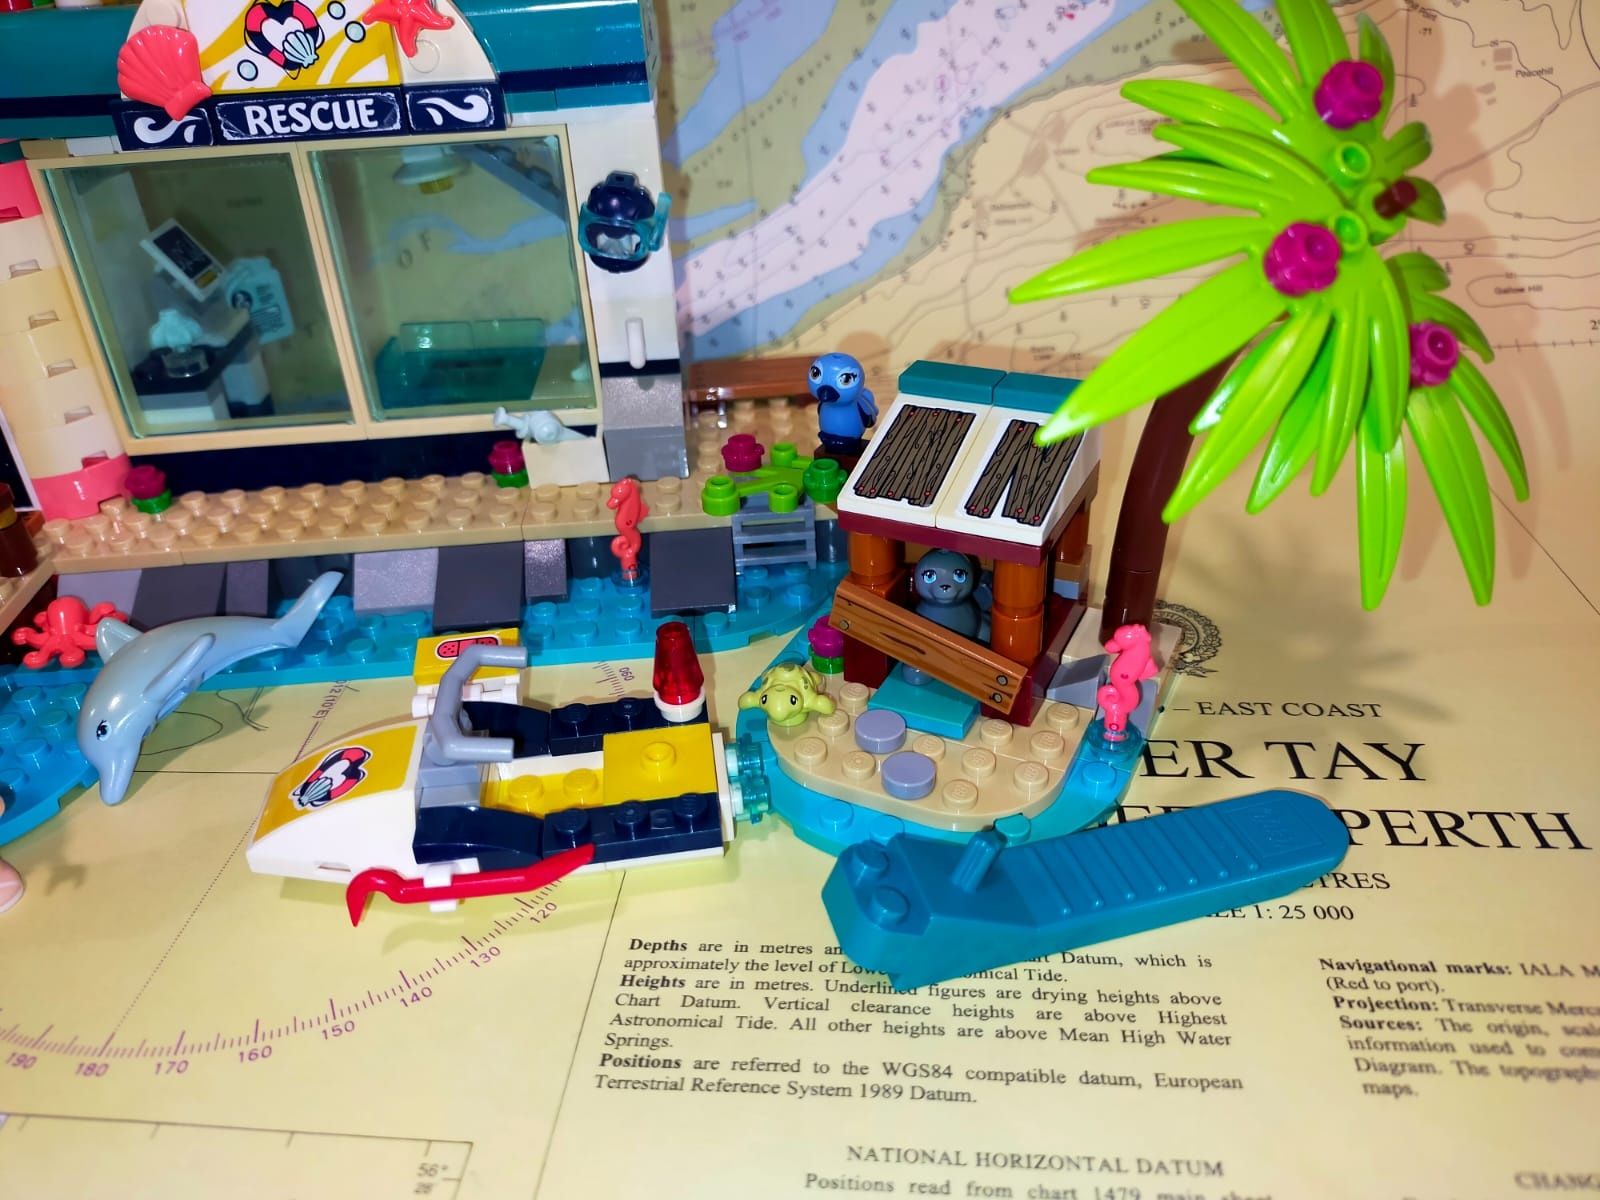 LEGO Friends 41380 Centrum ratunkowe w latarni morskiej